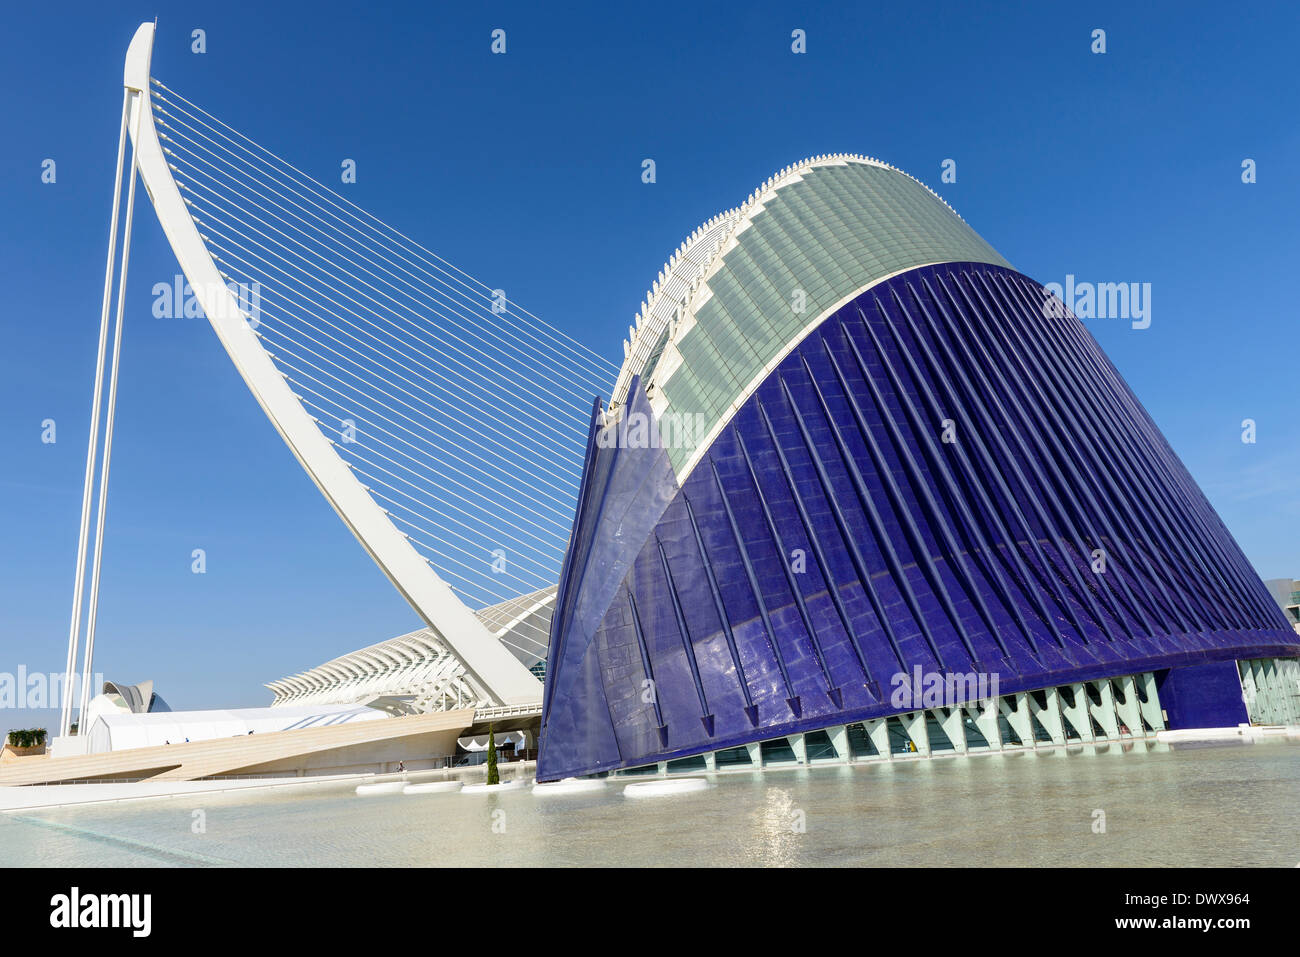 Stadt der Künste und Wissenschaft sowie Oceanogràfic, Valencia, Spanien Stockfoto